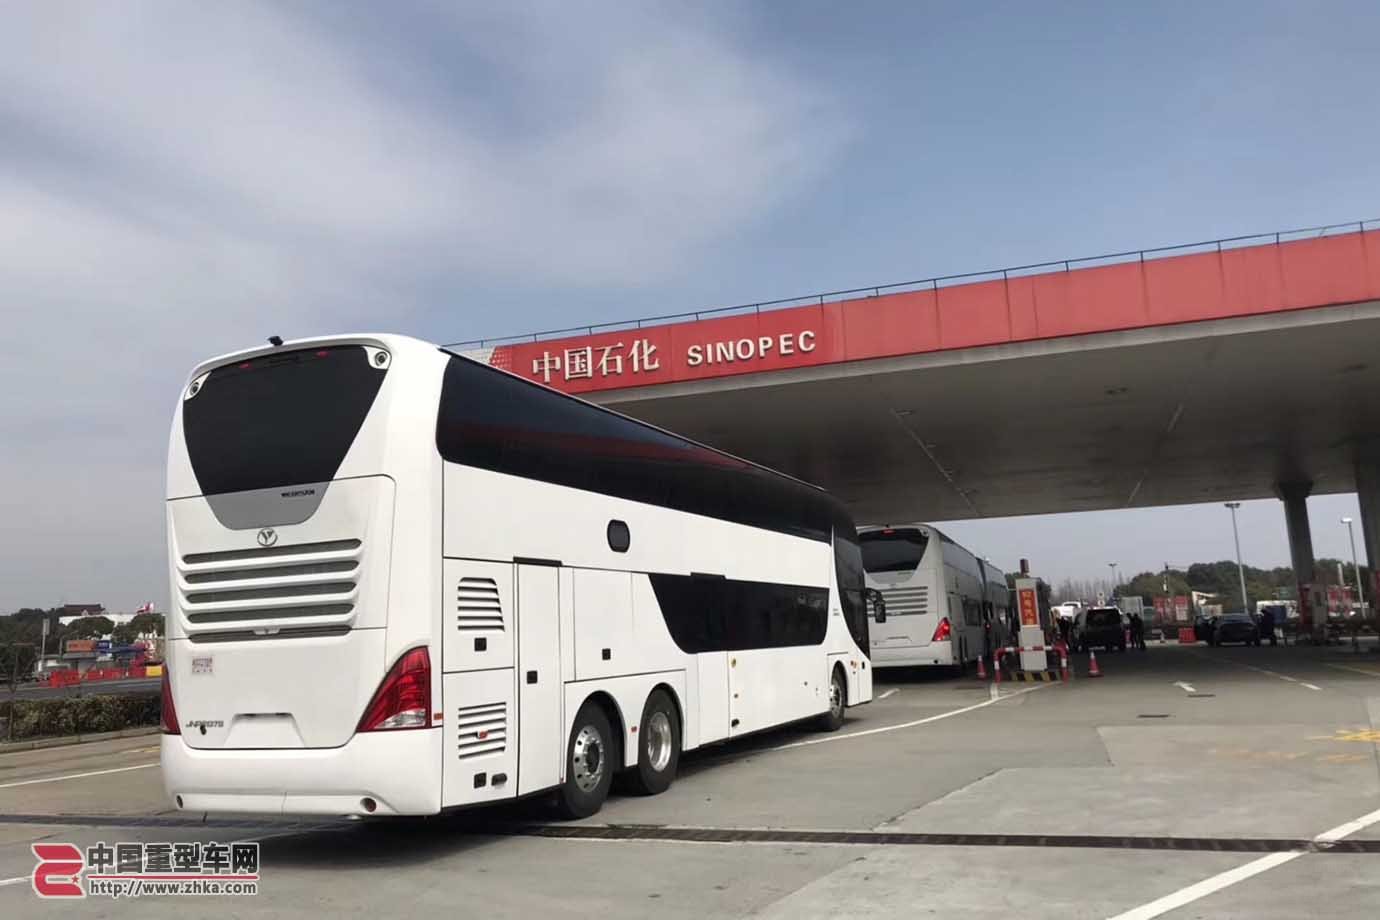 13米7双层大巴仍在国产 g60枫泾服务区偶遇出口智利青年6137s客车